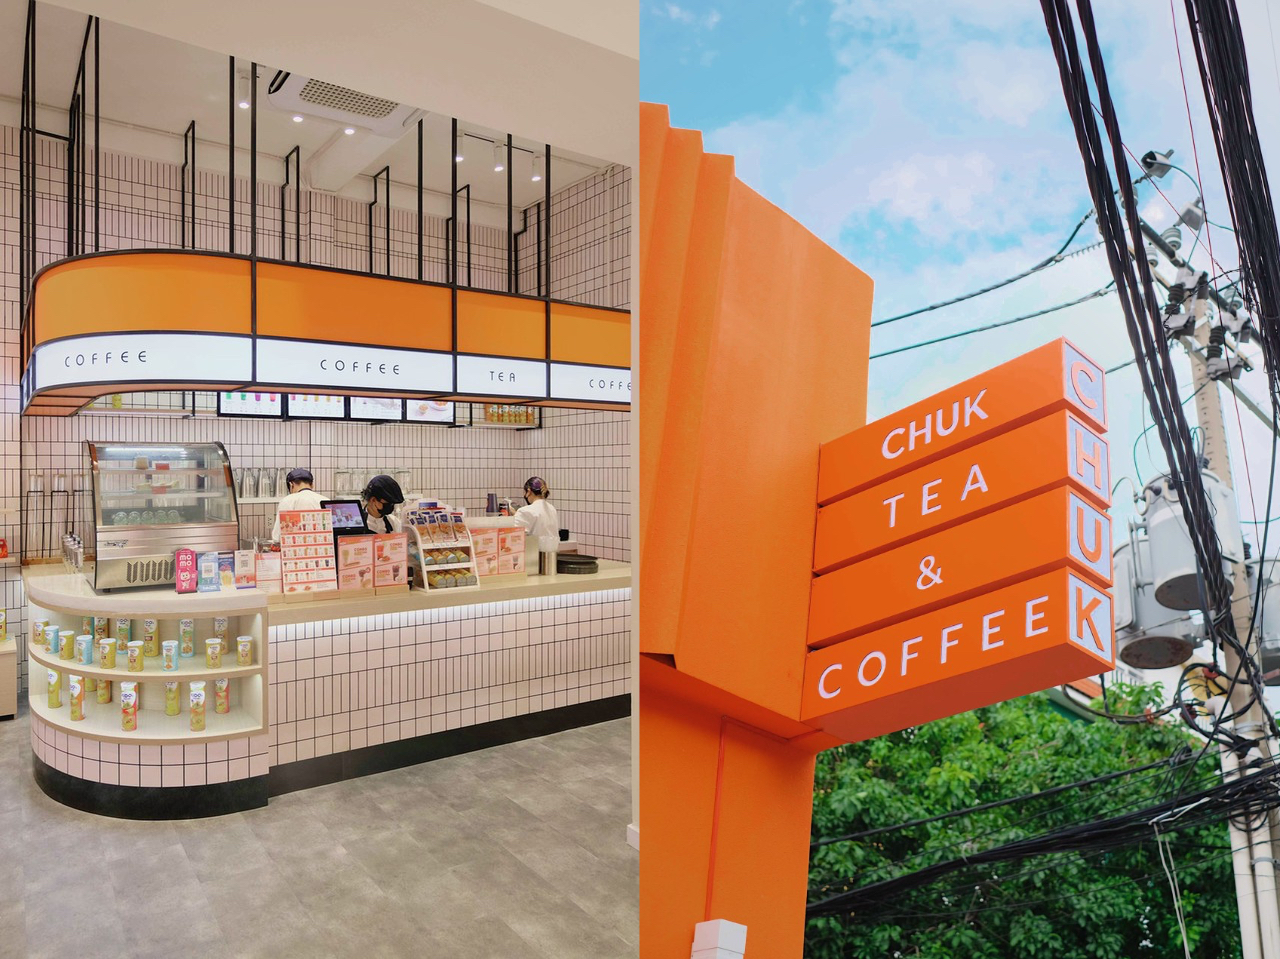 Chuỗi Chuk Chuk của KIDO đổi tên thương hiệu thành Chuk Coffee & Tea, chính thức tiến quân ra Bắc với cửa hàng đầu tiên ở Hà Nội - Ảnh 6.